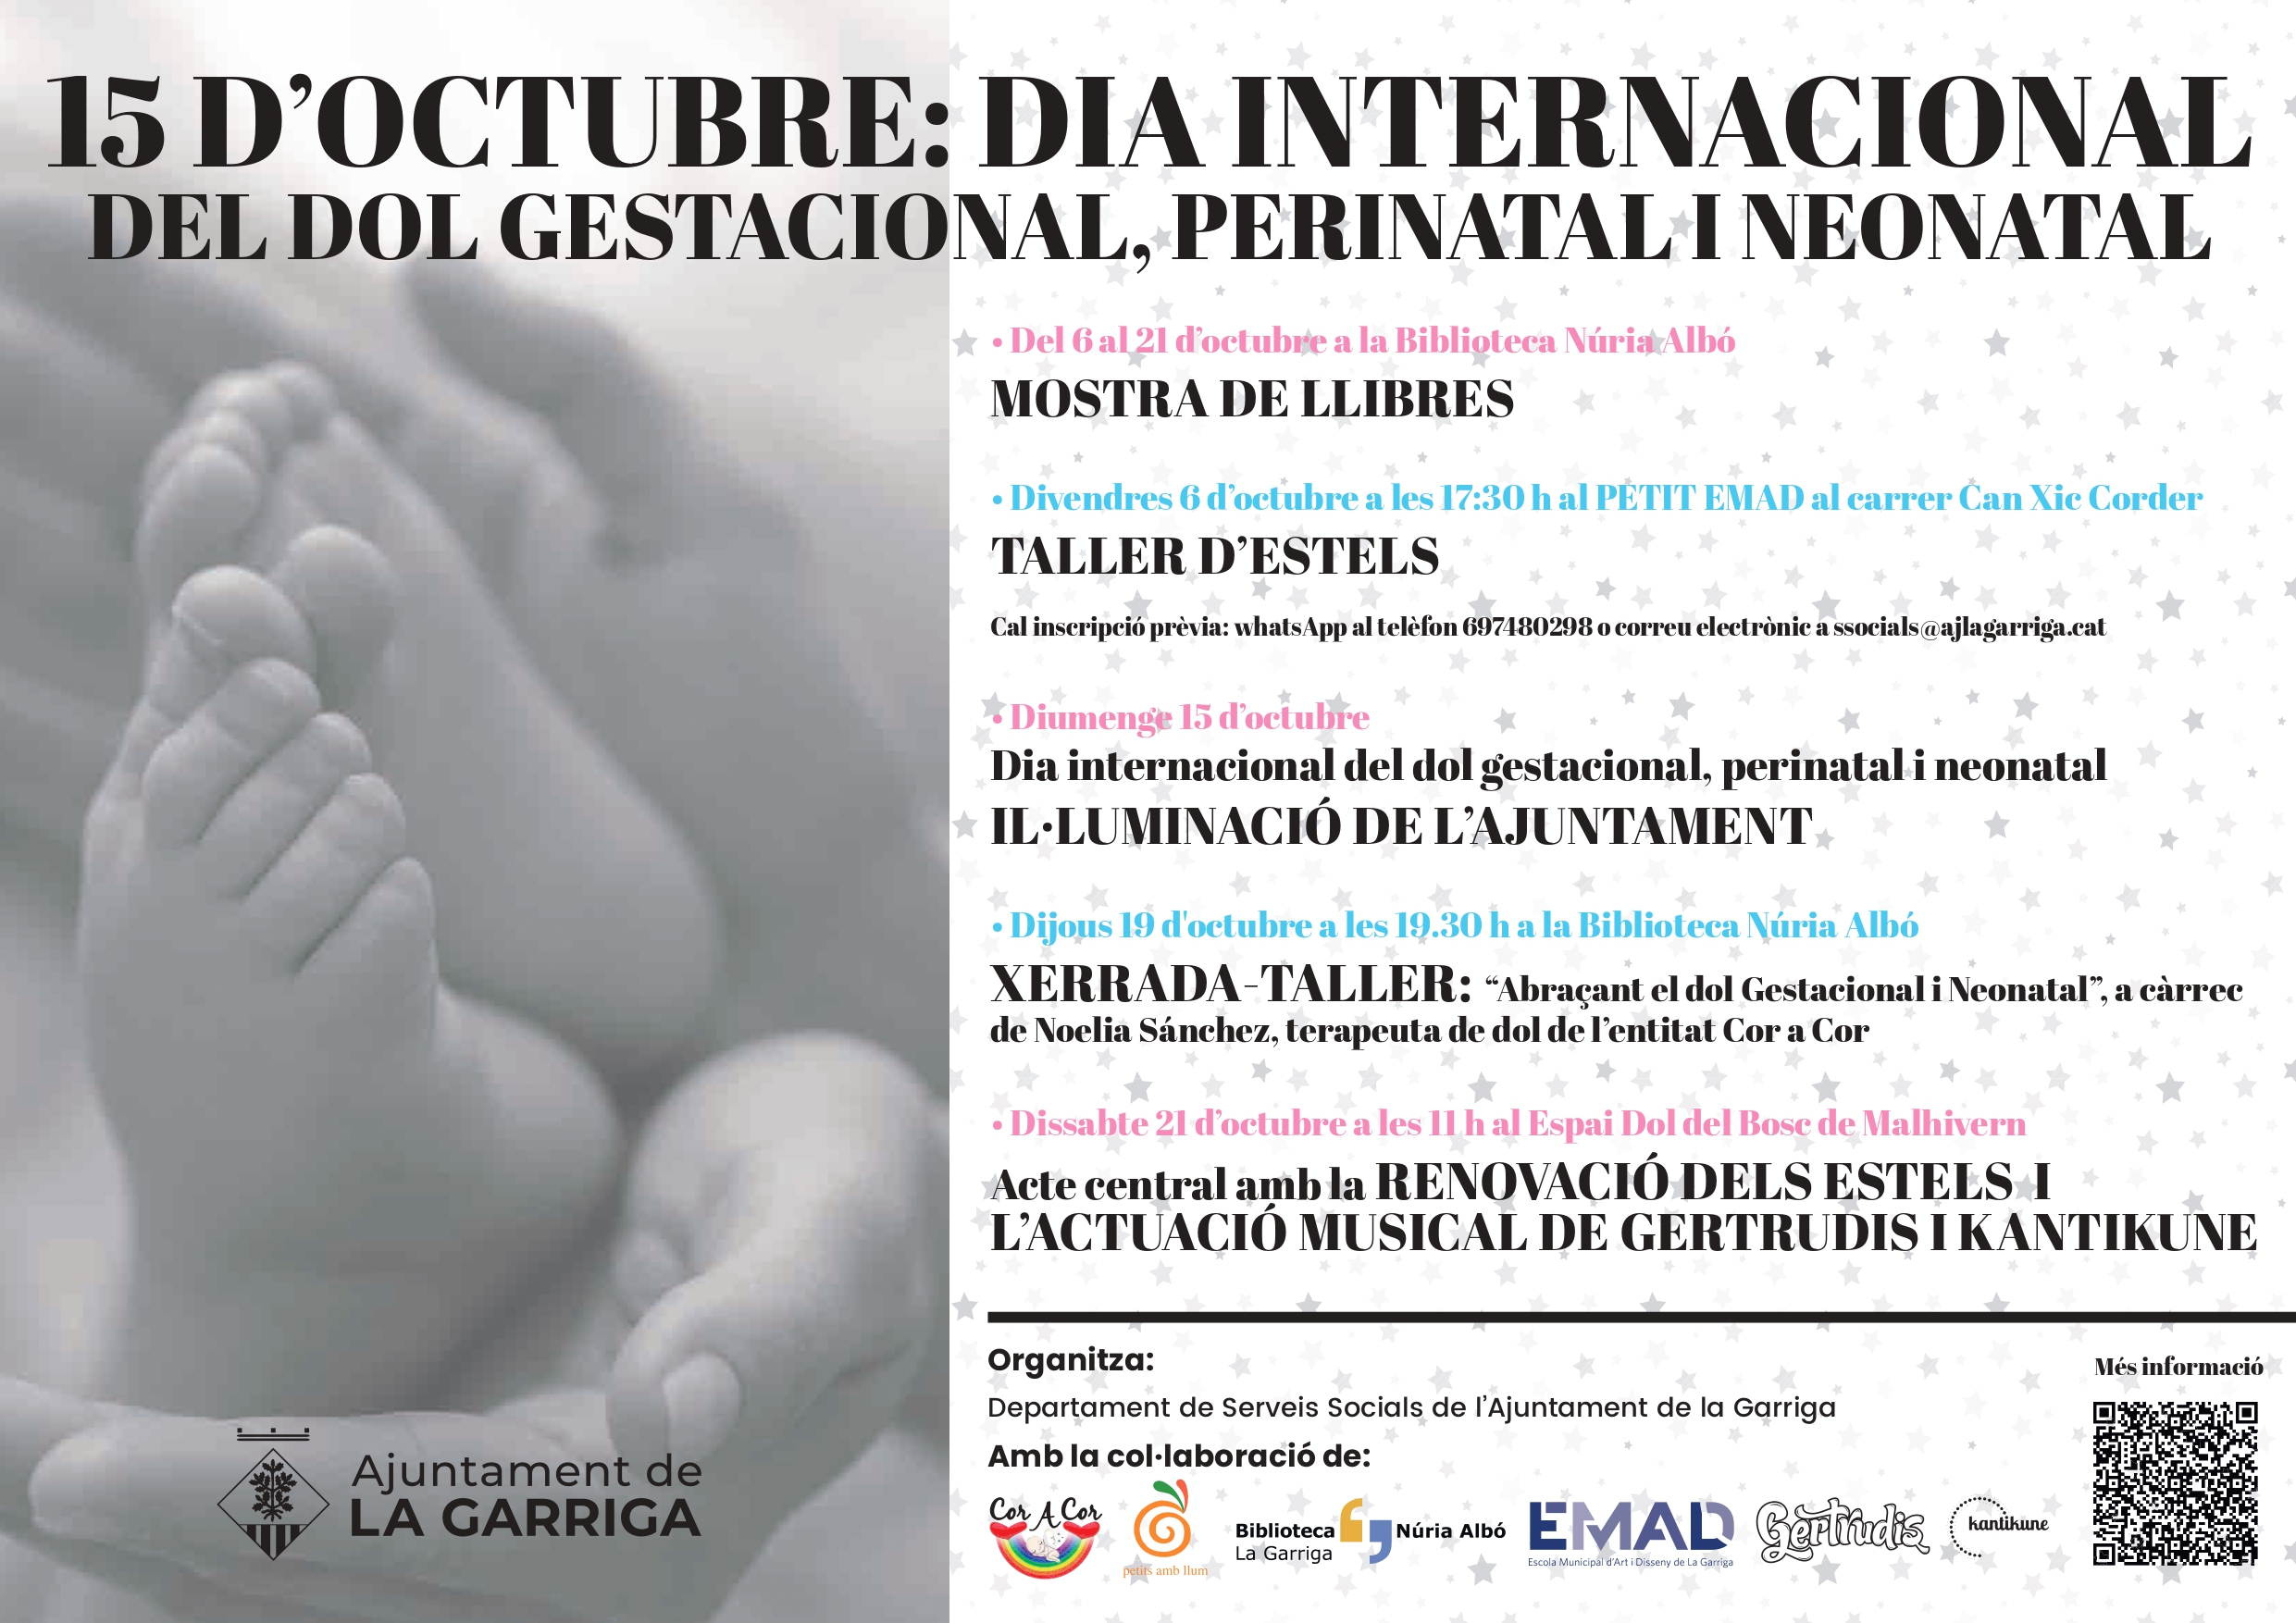 Dia Internacional del Dol Gestacional, Perinatal i Neonatal